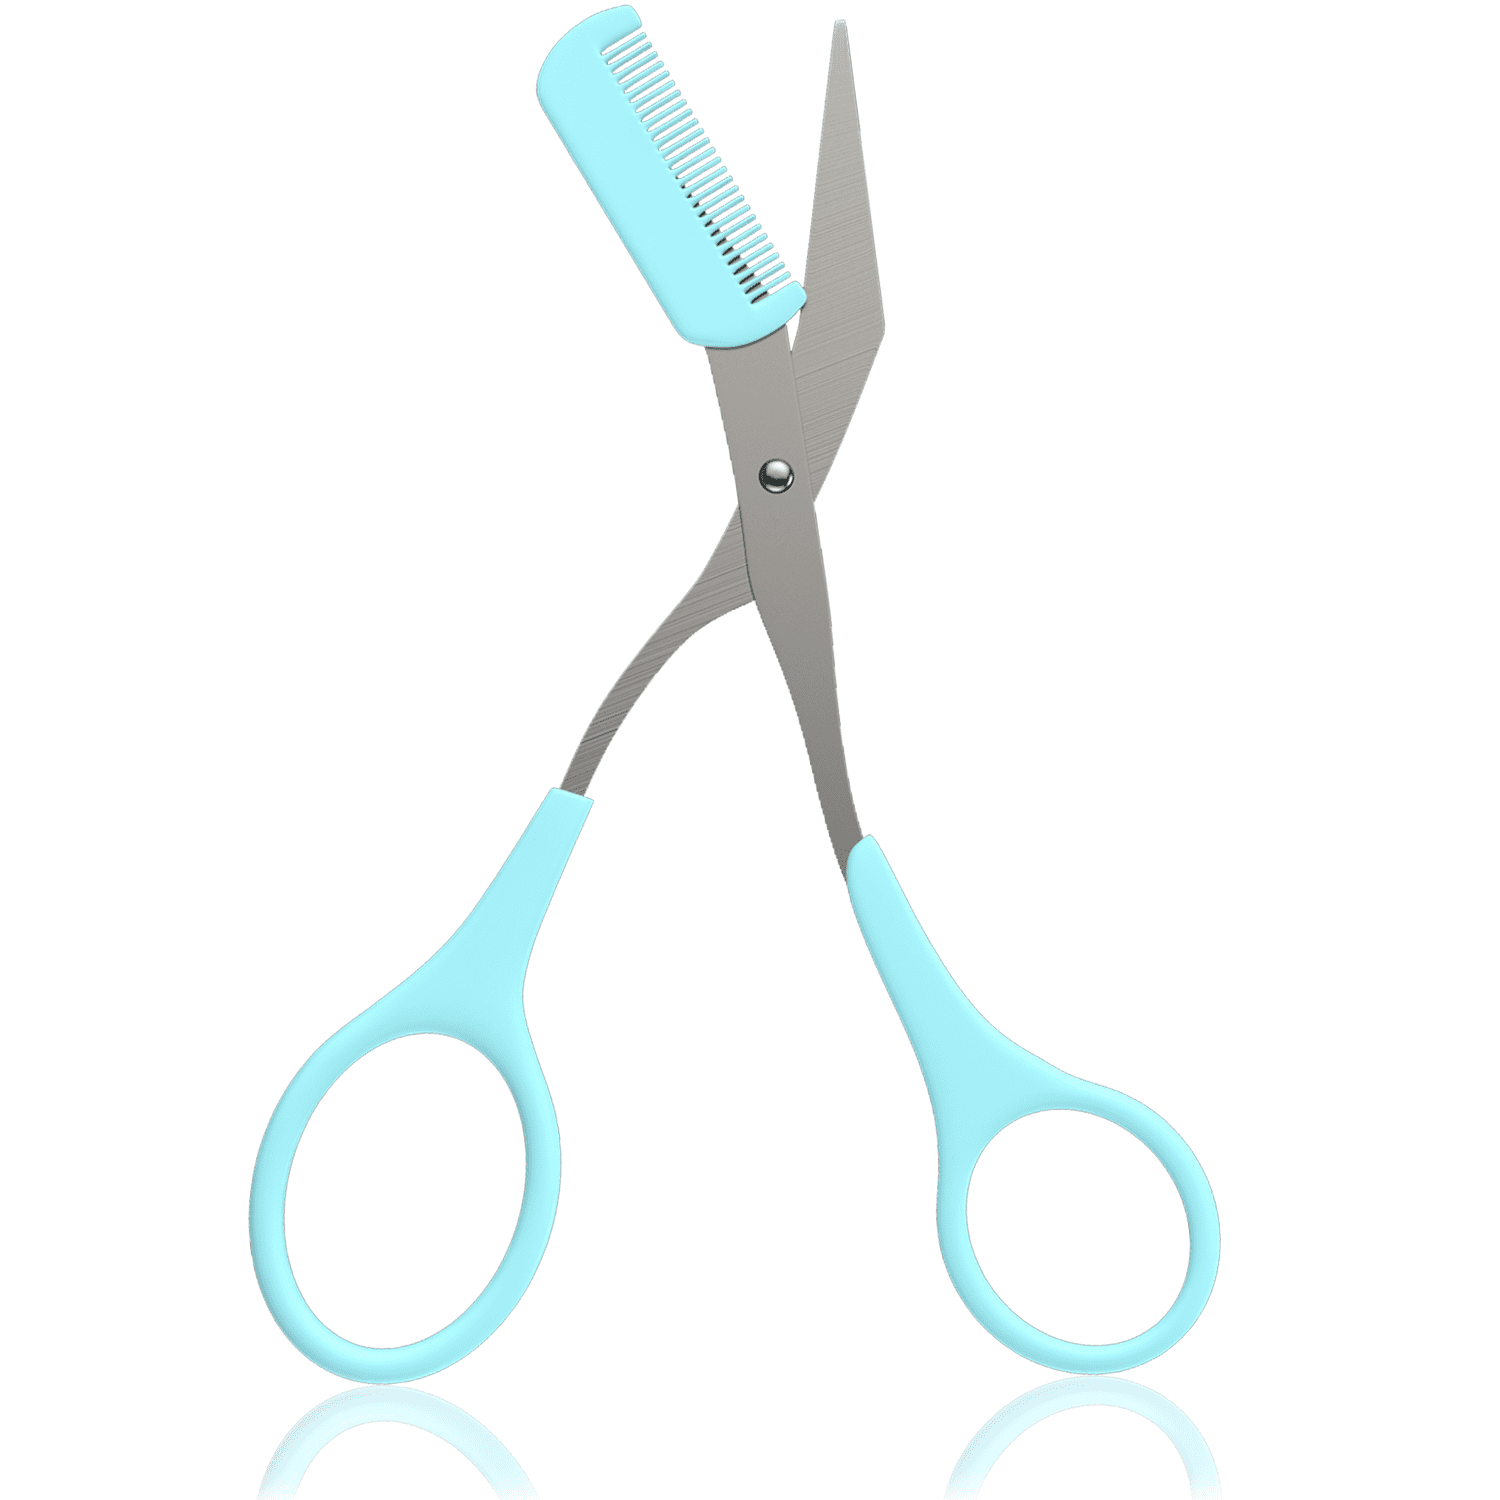 The Brow Scissor